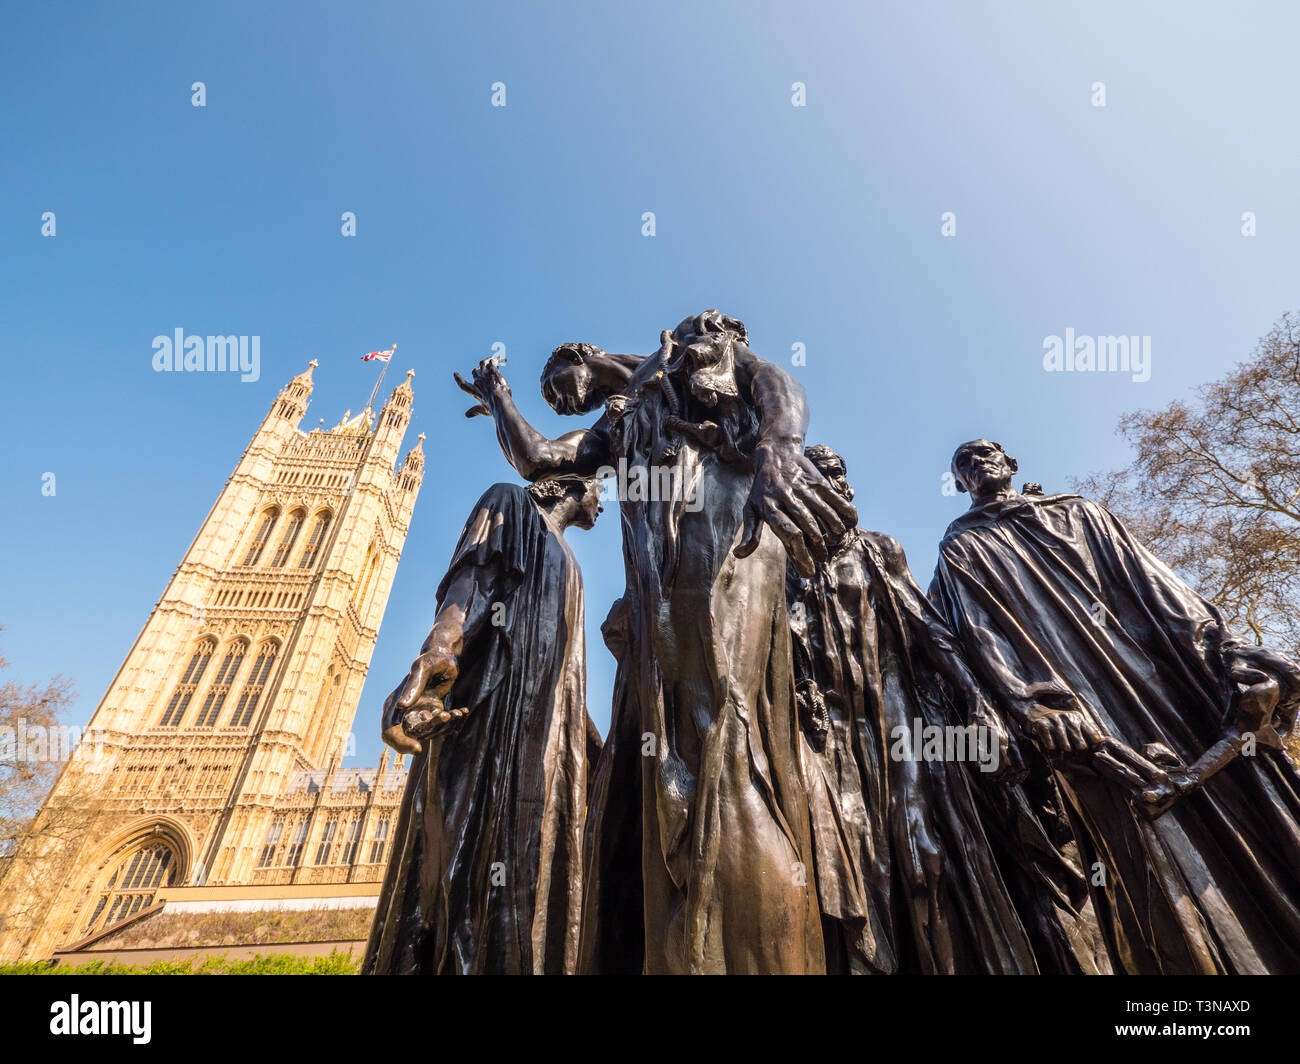 Die Bürger von Calais Skulptur von Auguste Rodin, Vor dem Palast von Westminster, London, England, UK, GB. Stockfoto